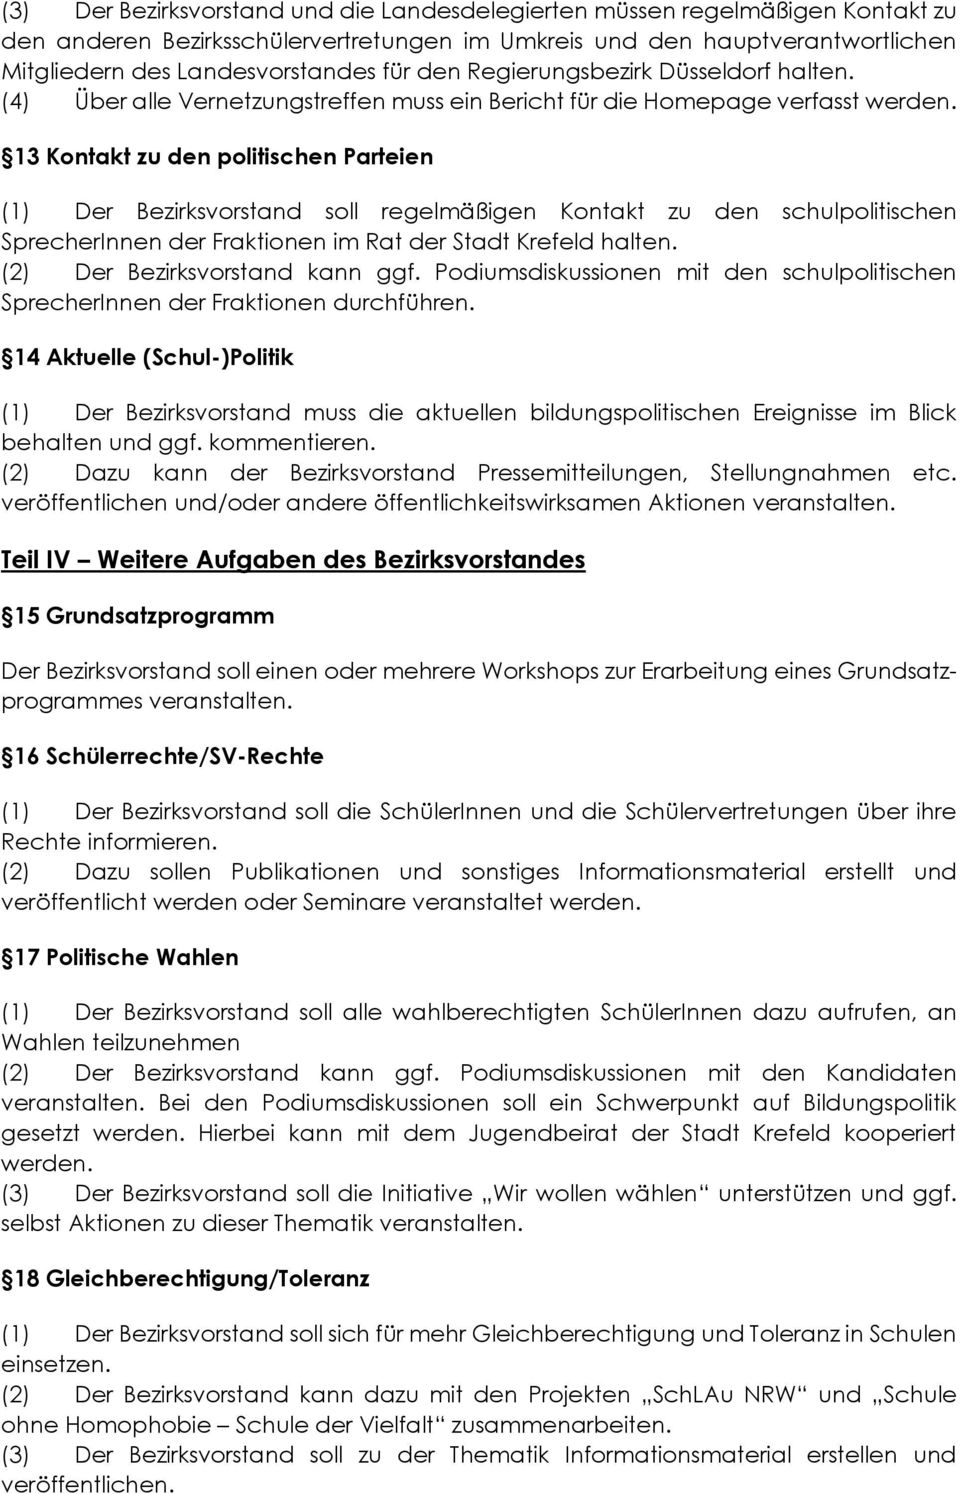 13 Kontakt zu den politischen Parteien (1) Der Bezirksvorstand soll regelmäßigen Kontakt zu den schulpolitischen SprecherInnen der Fraktionen im Rat der Stadt Krefeld halten.